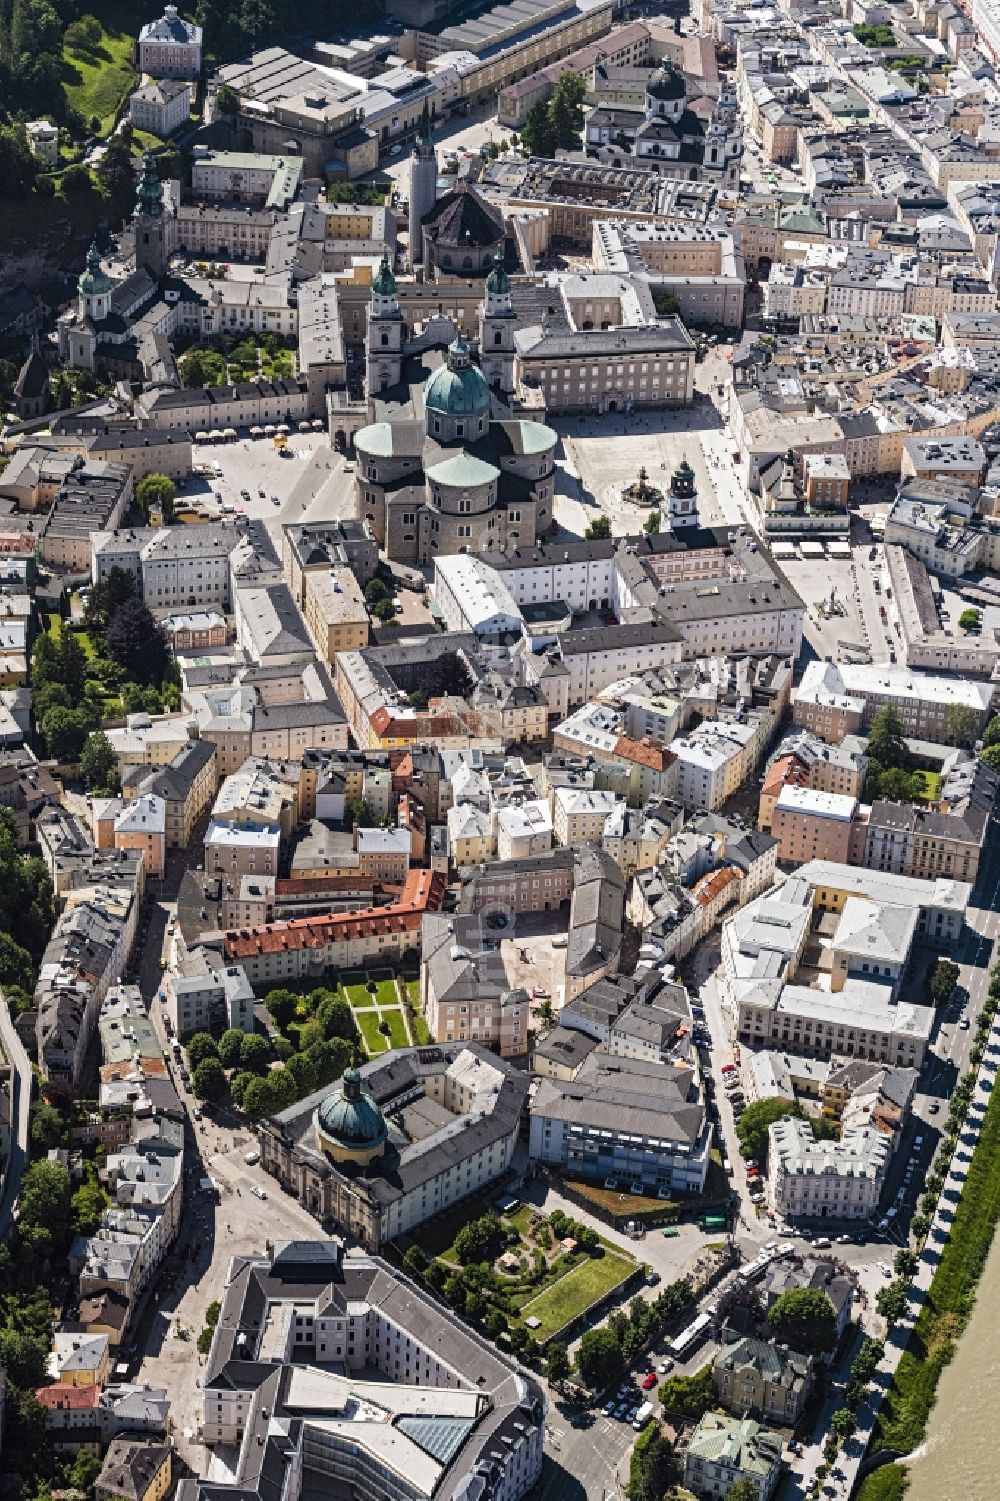 Luftaufnahme Salzburg - Stadtzentrum im Innenstadtbereich am Ufer des Flußverlaufes der Salzach in Salzburg in Österreich